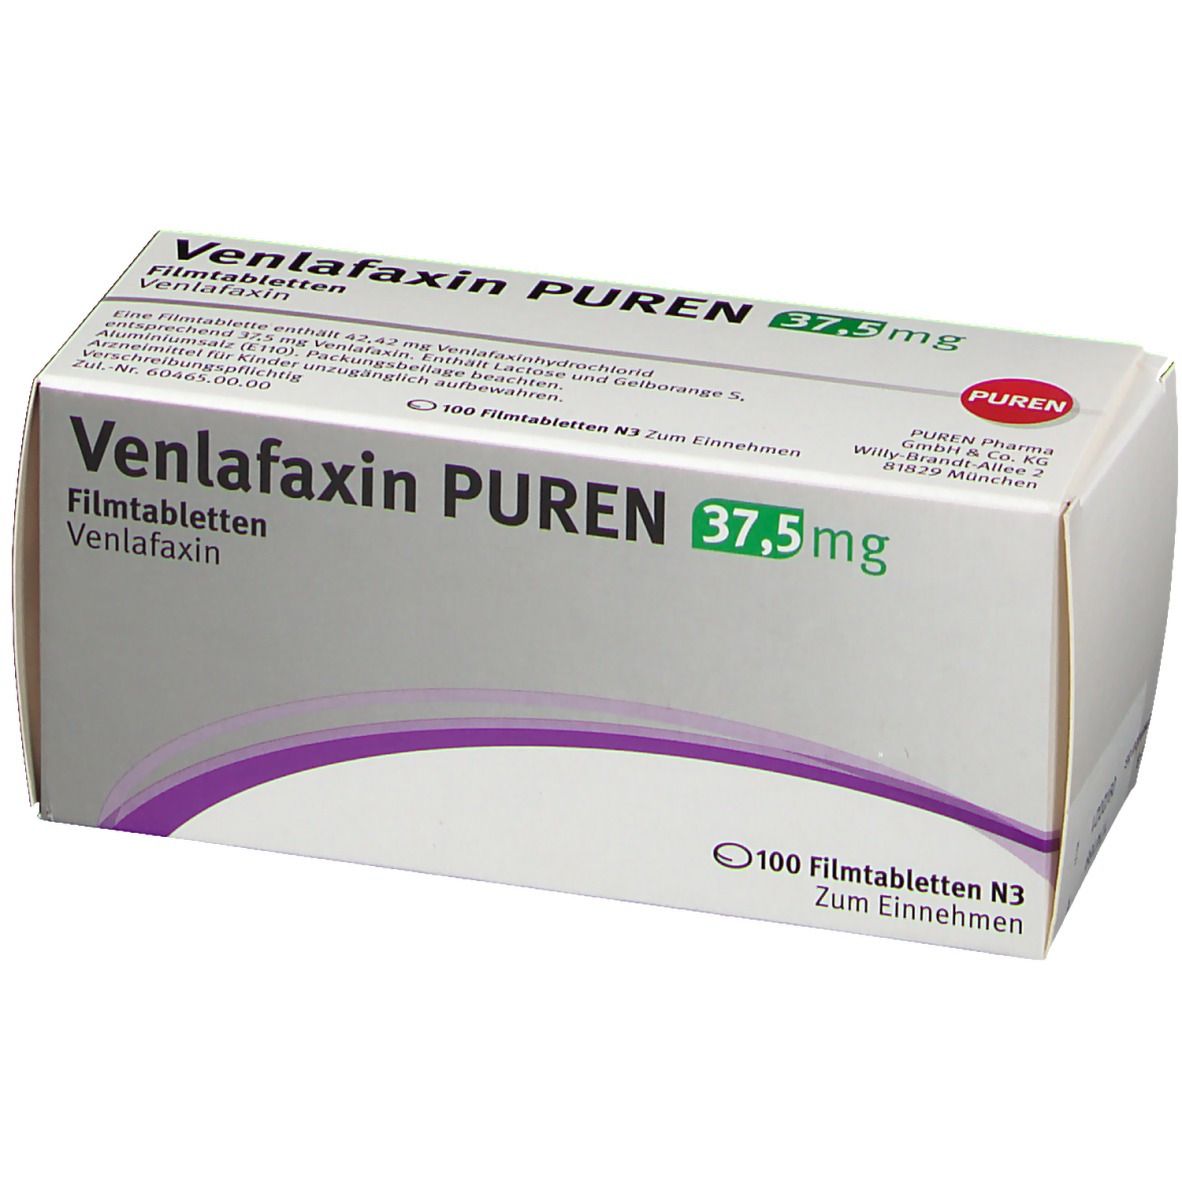 VENLAFAXIN PUREN 37,5 mg Filmtabletten